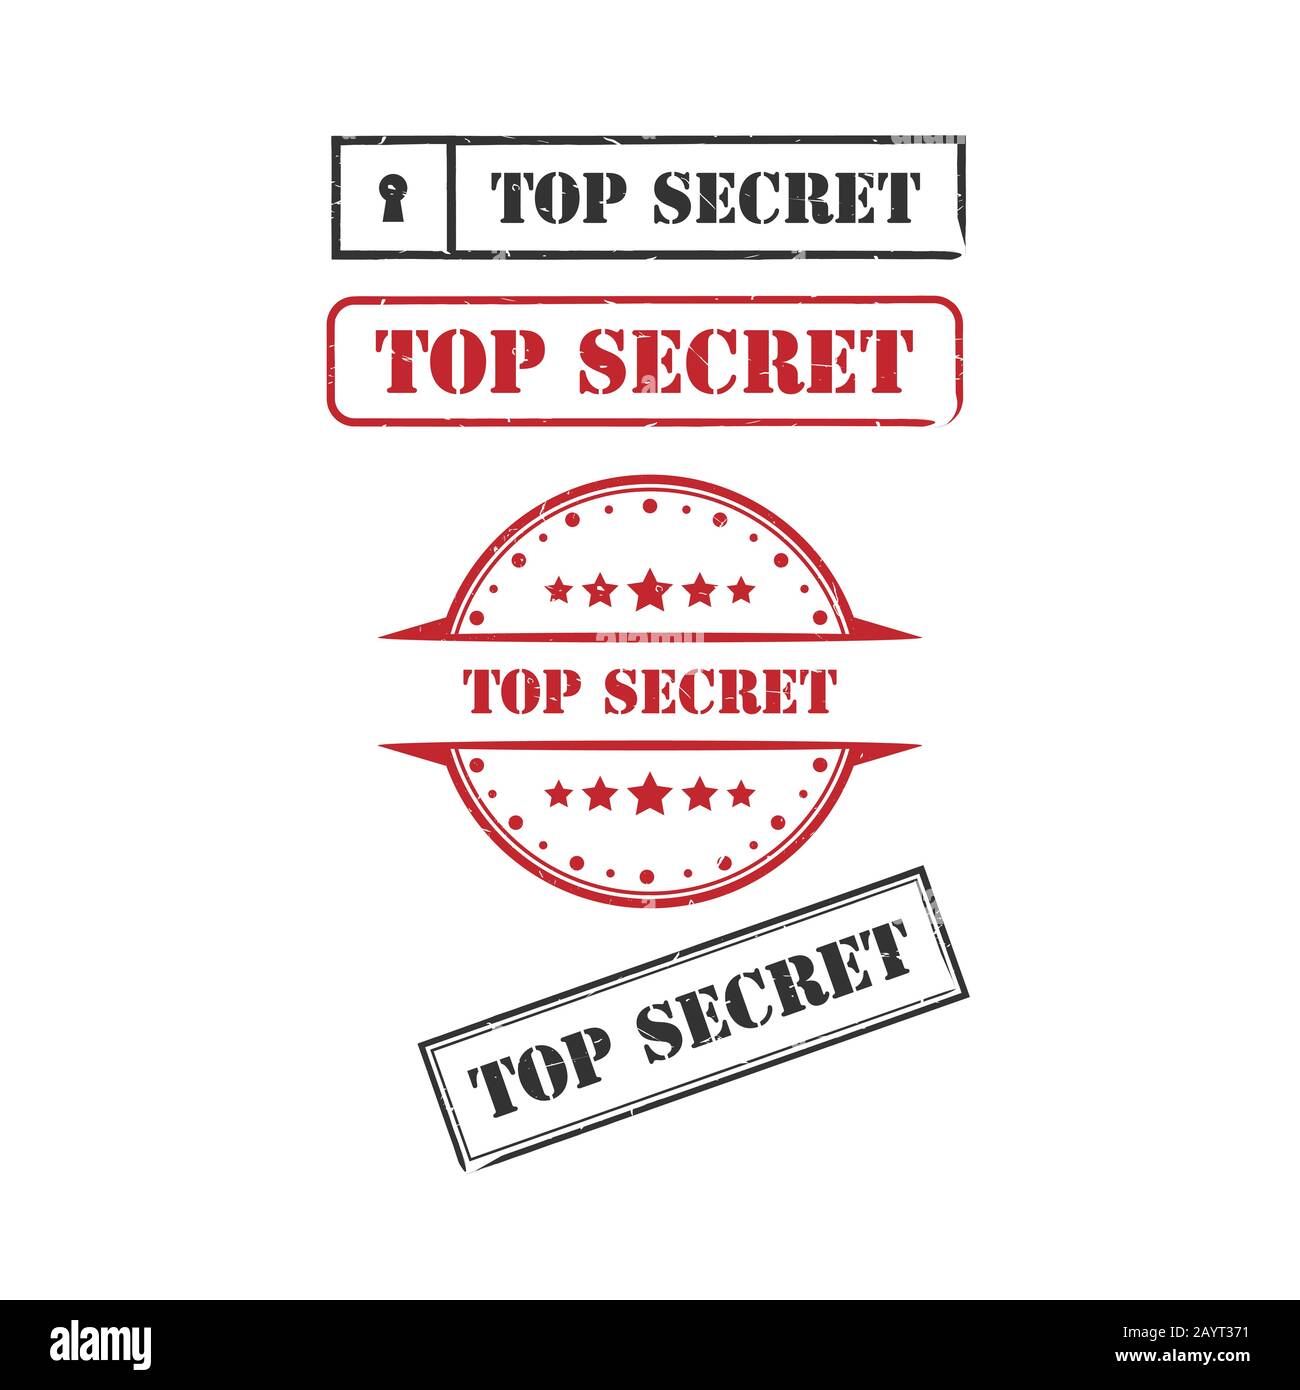 Top secret grunge gomma impronta immagine vettoriale. Set di caratteri di stampa in gomma grunge immagine vettoriale Illustrazione Vettoriale